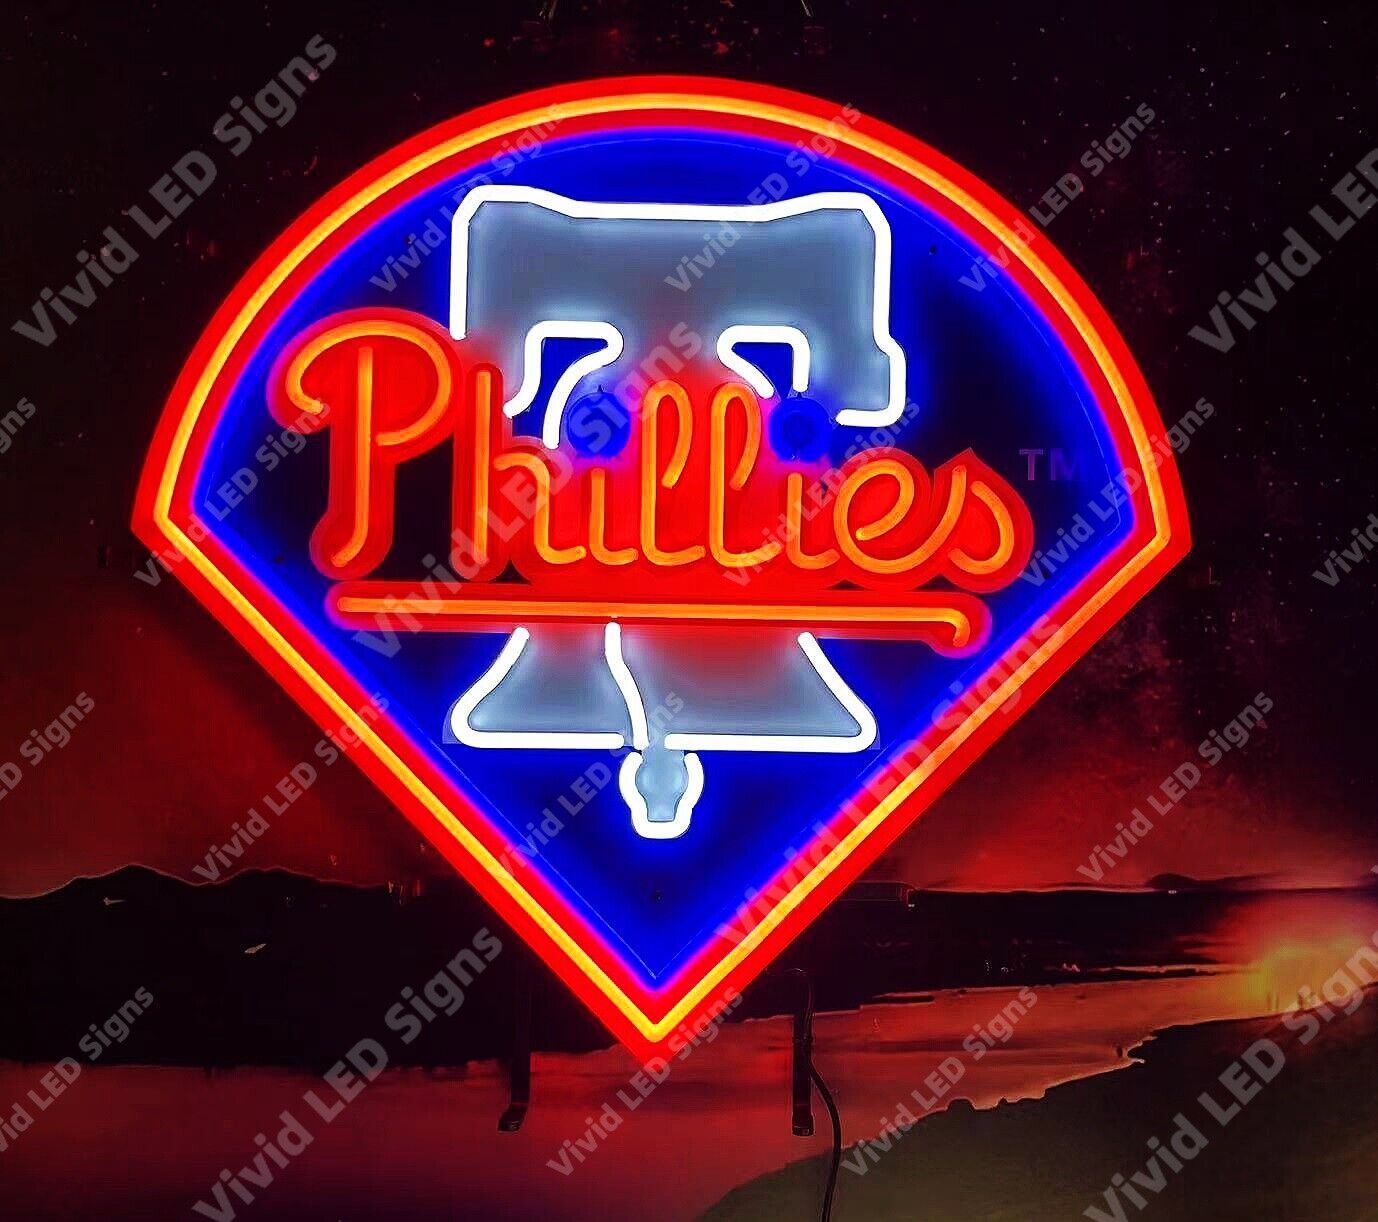 Philadelphia Phillies 24